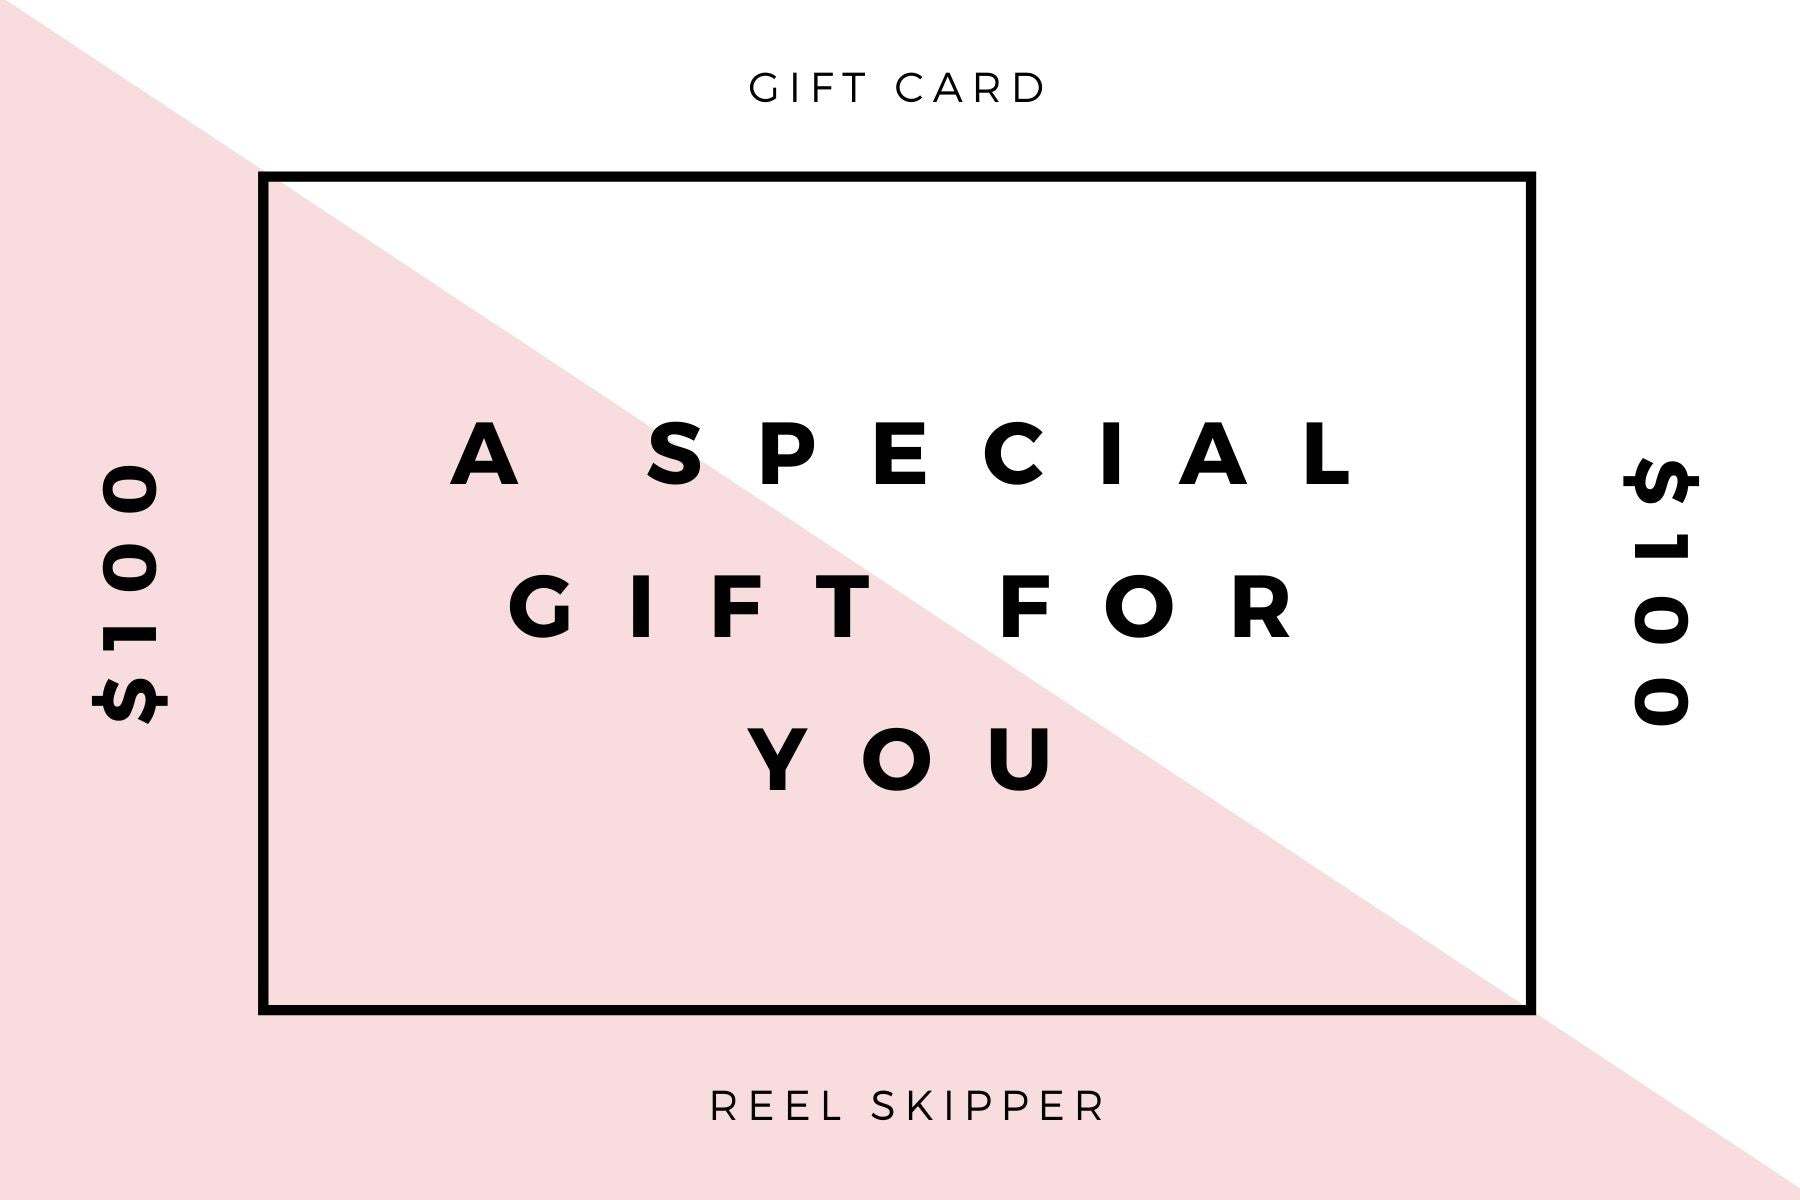 Reel Skipper Gift Card